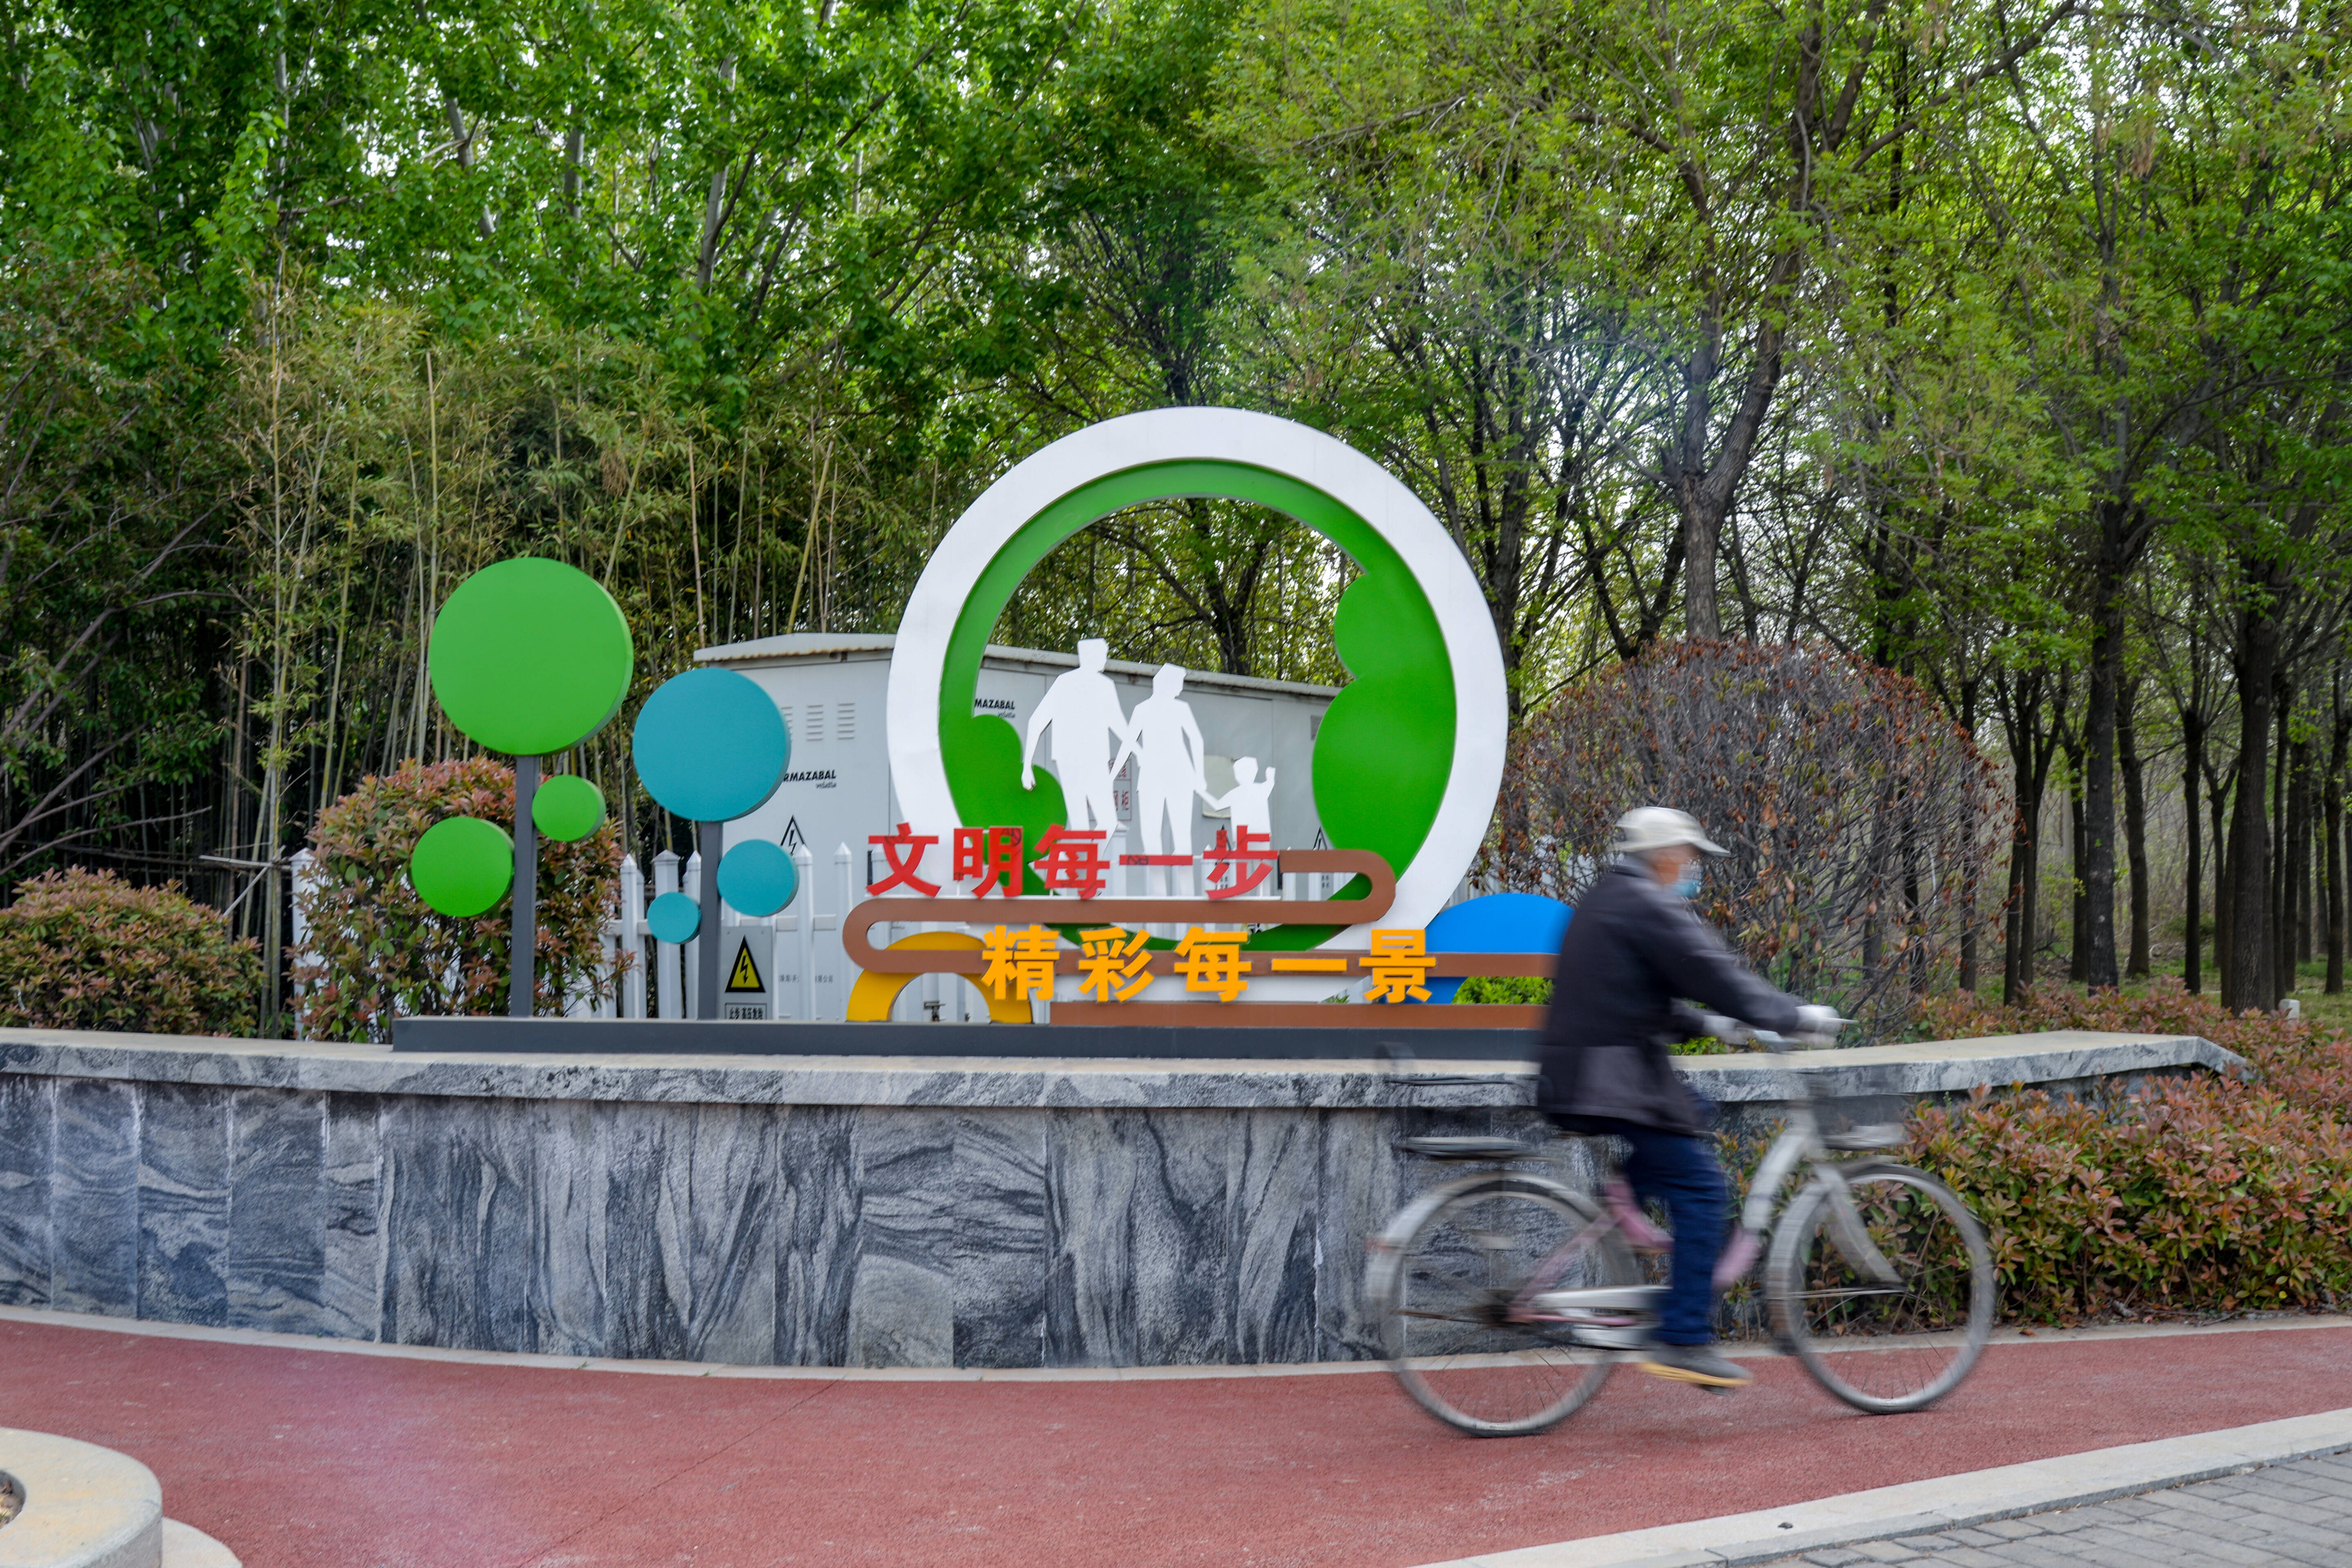 转角可遇的“口袋公园”、出门即享的“诗与远方”——滨州市建好“小口袋”、服务“大民生”